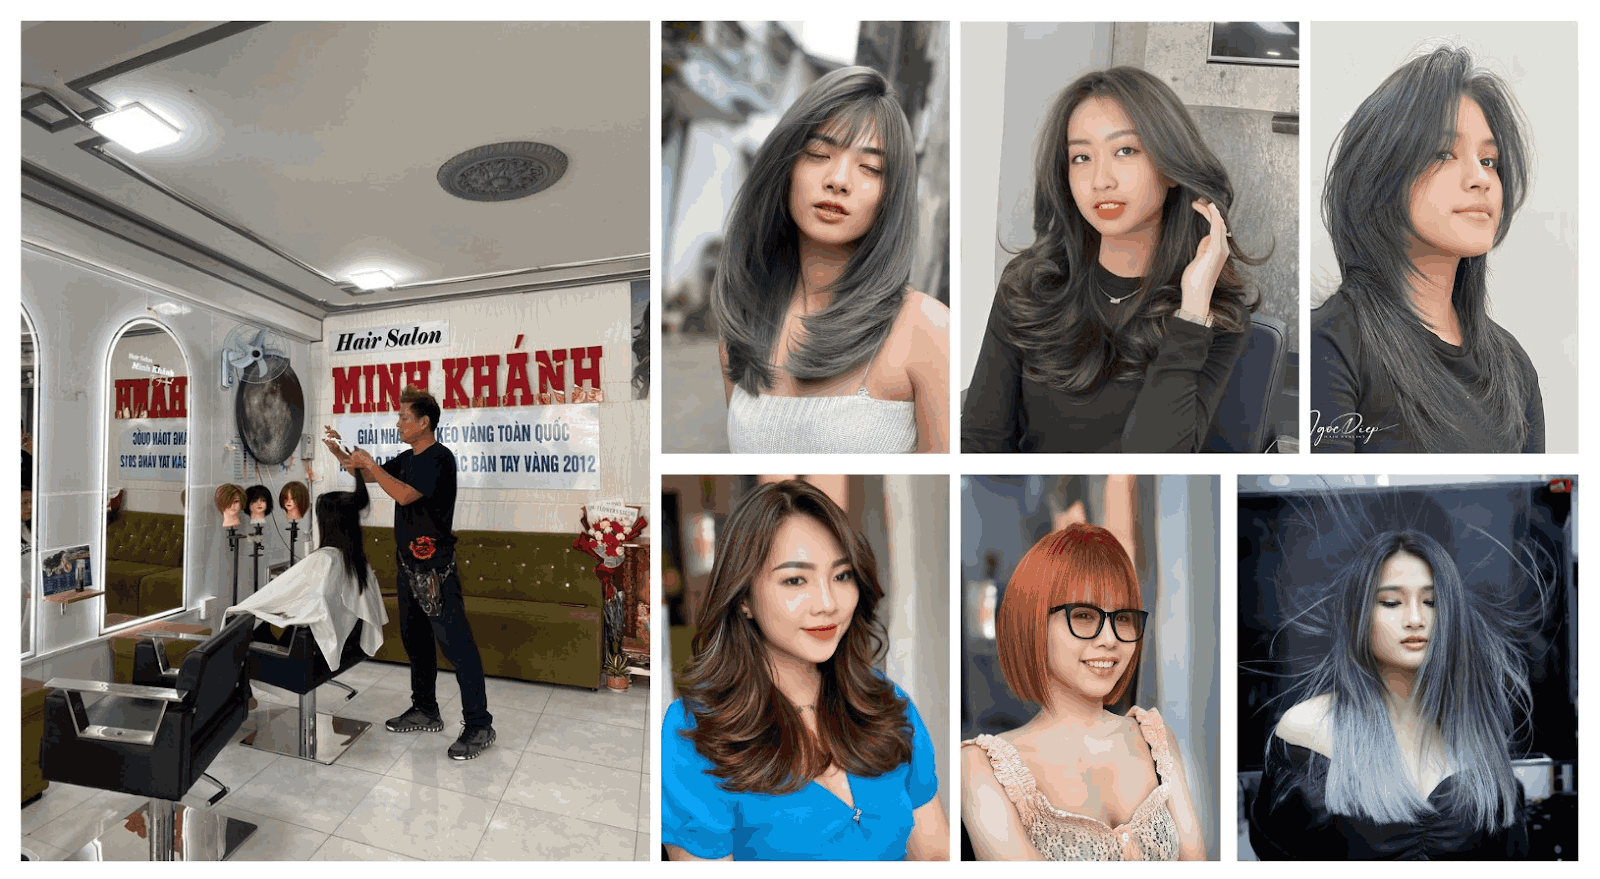 Hair Salon Minh Khánh